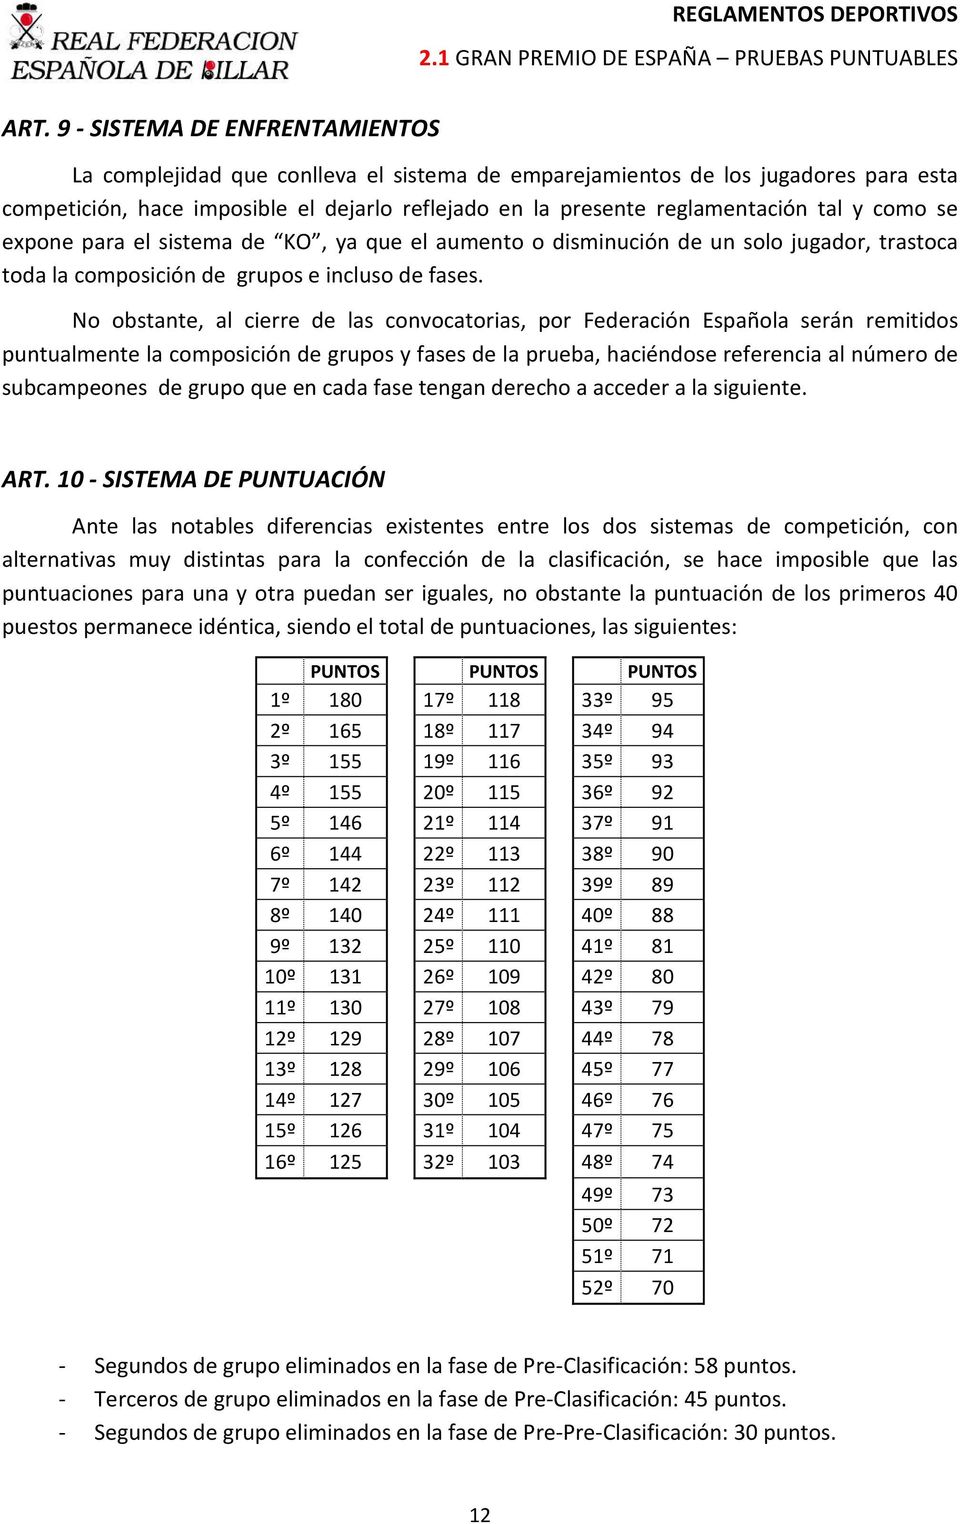 No obstante, al cierre de las convocatorias, por Federación Española serán remitidos puntualmente la composición de grupos y fases de la prueba, haciéndose referencia al número de subcampeones de